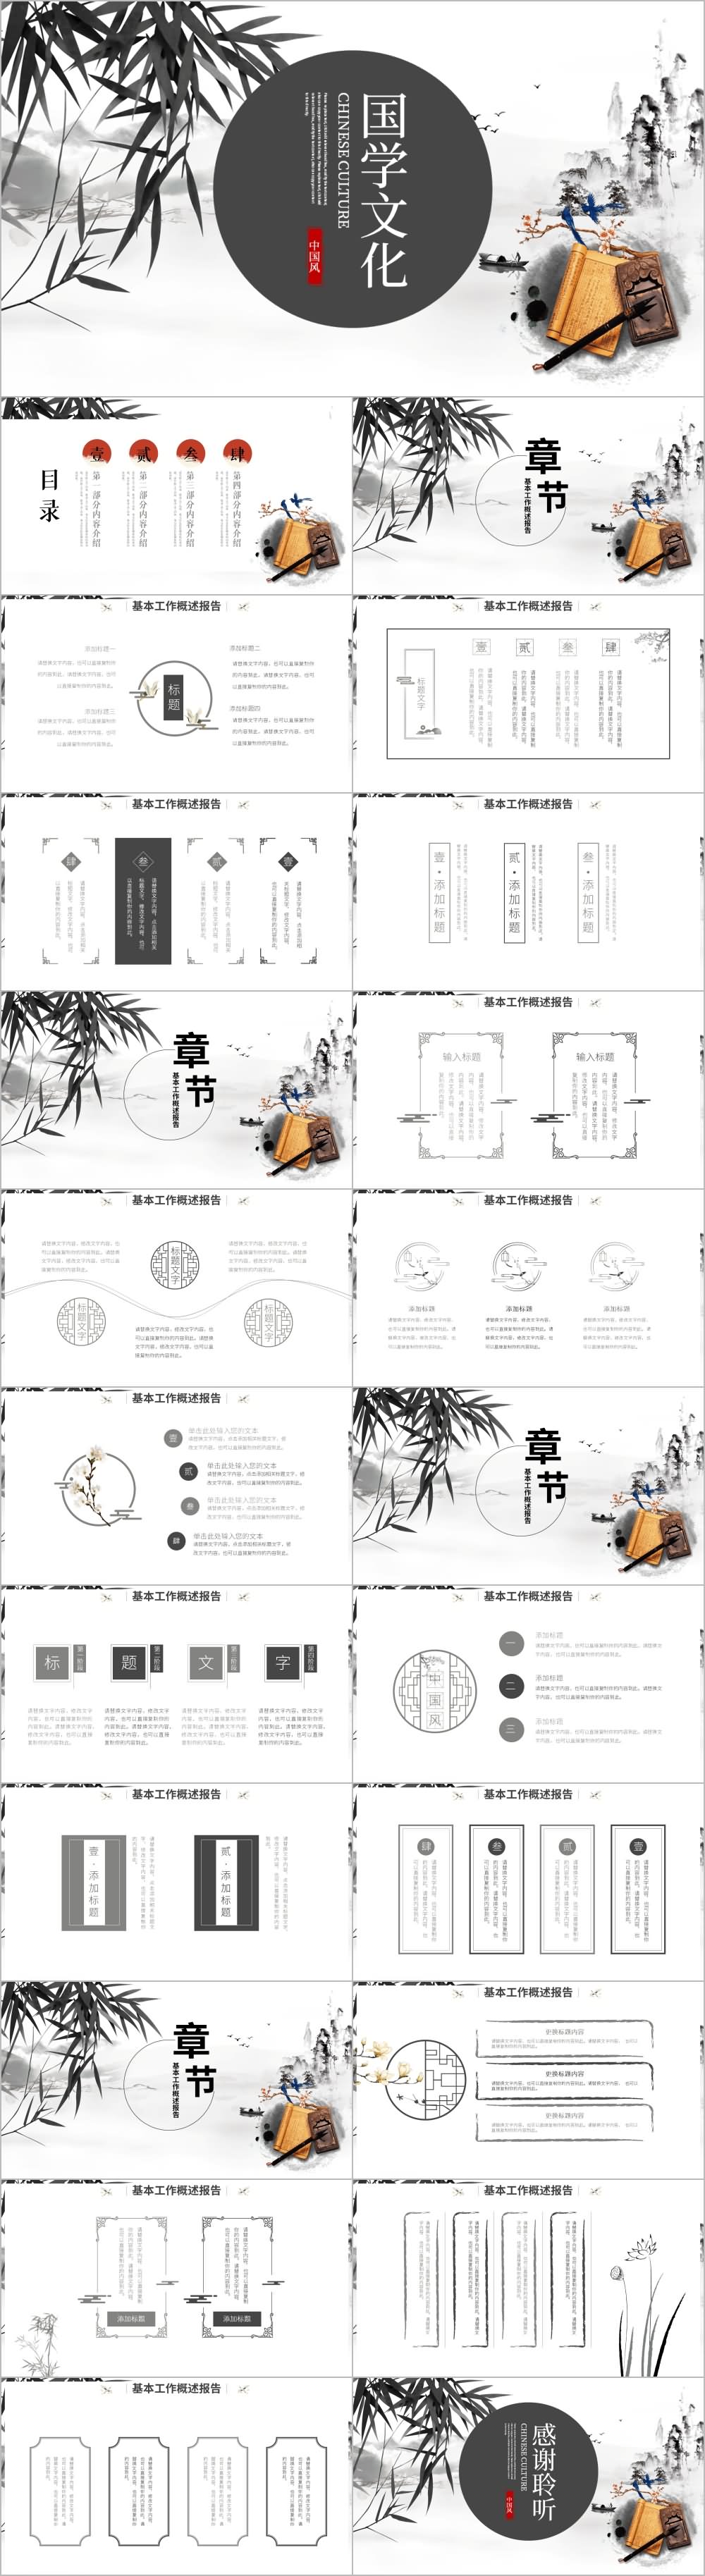 中国风水墨国学文化PPT模板